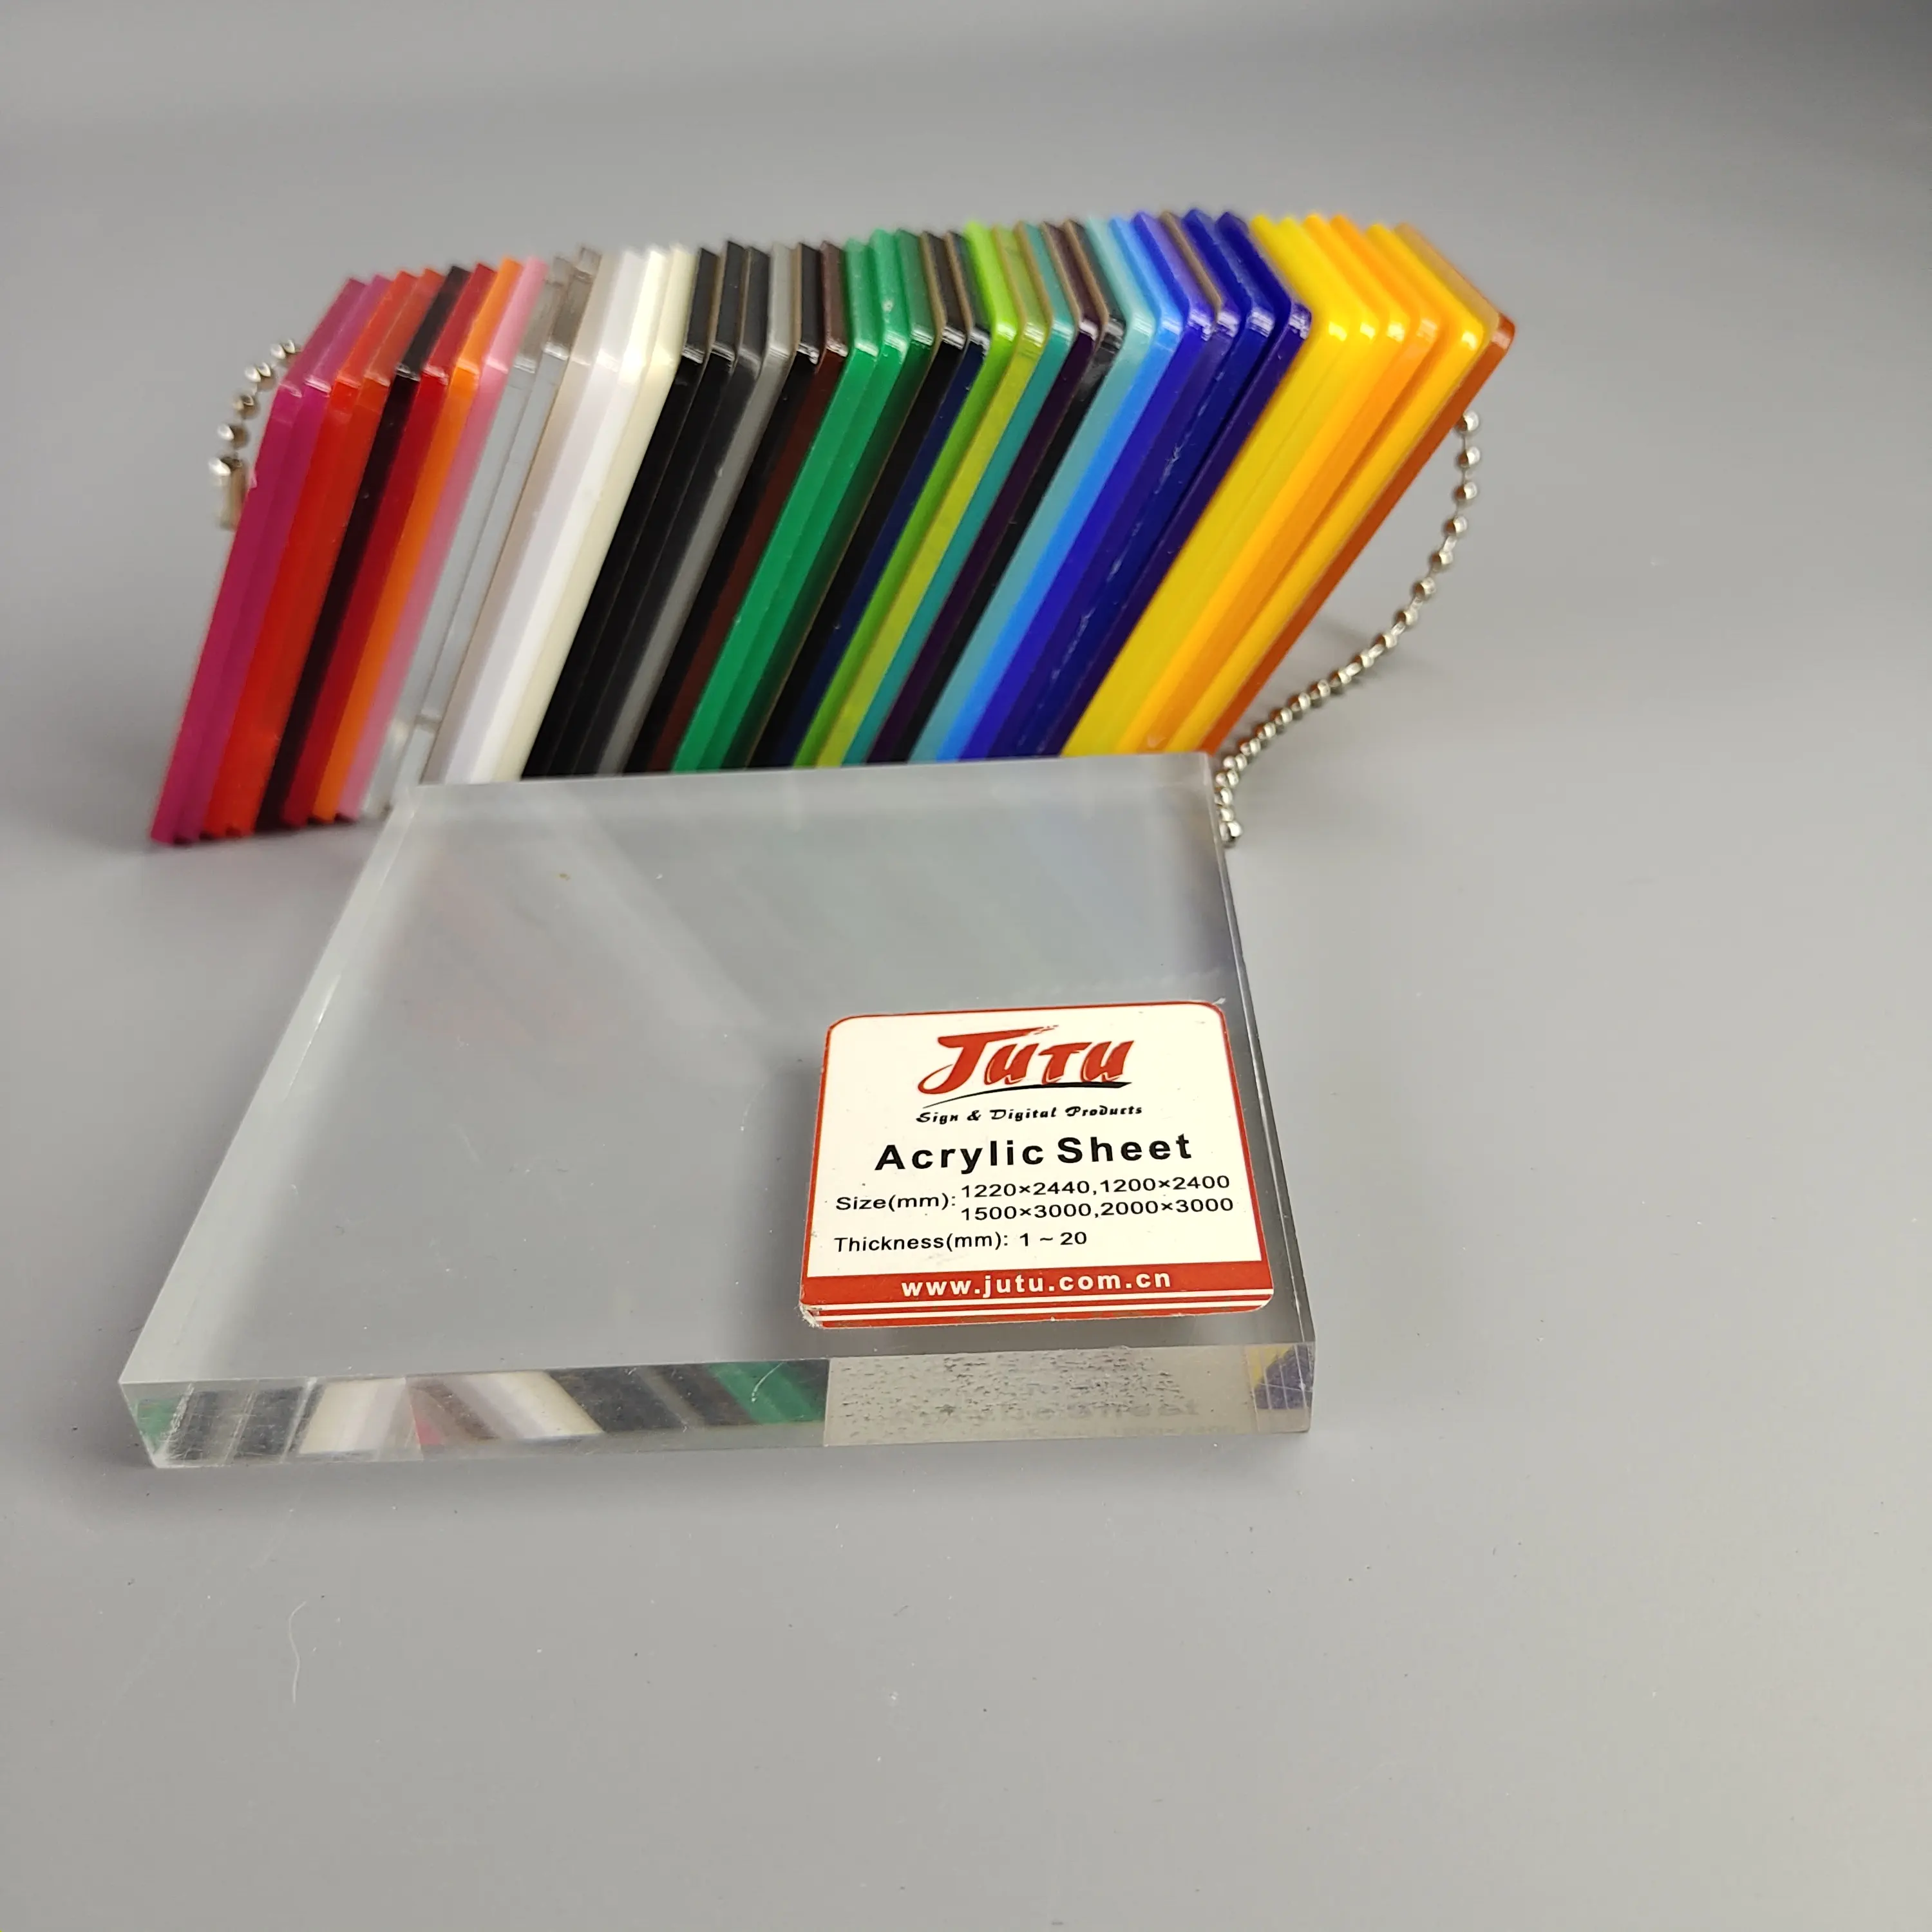 JUTU – feuille <span class=keywords><strong>acrylique</strong></span> transparente en plastique moulé Pmma pour découpe Laser, 1mm, 2mm, 3mm, 5mm, 12mm